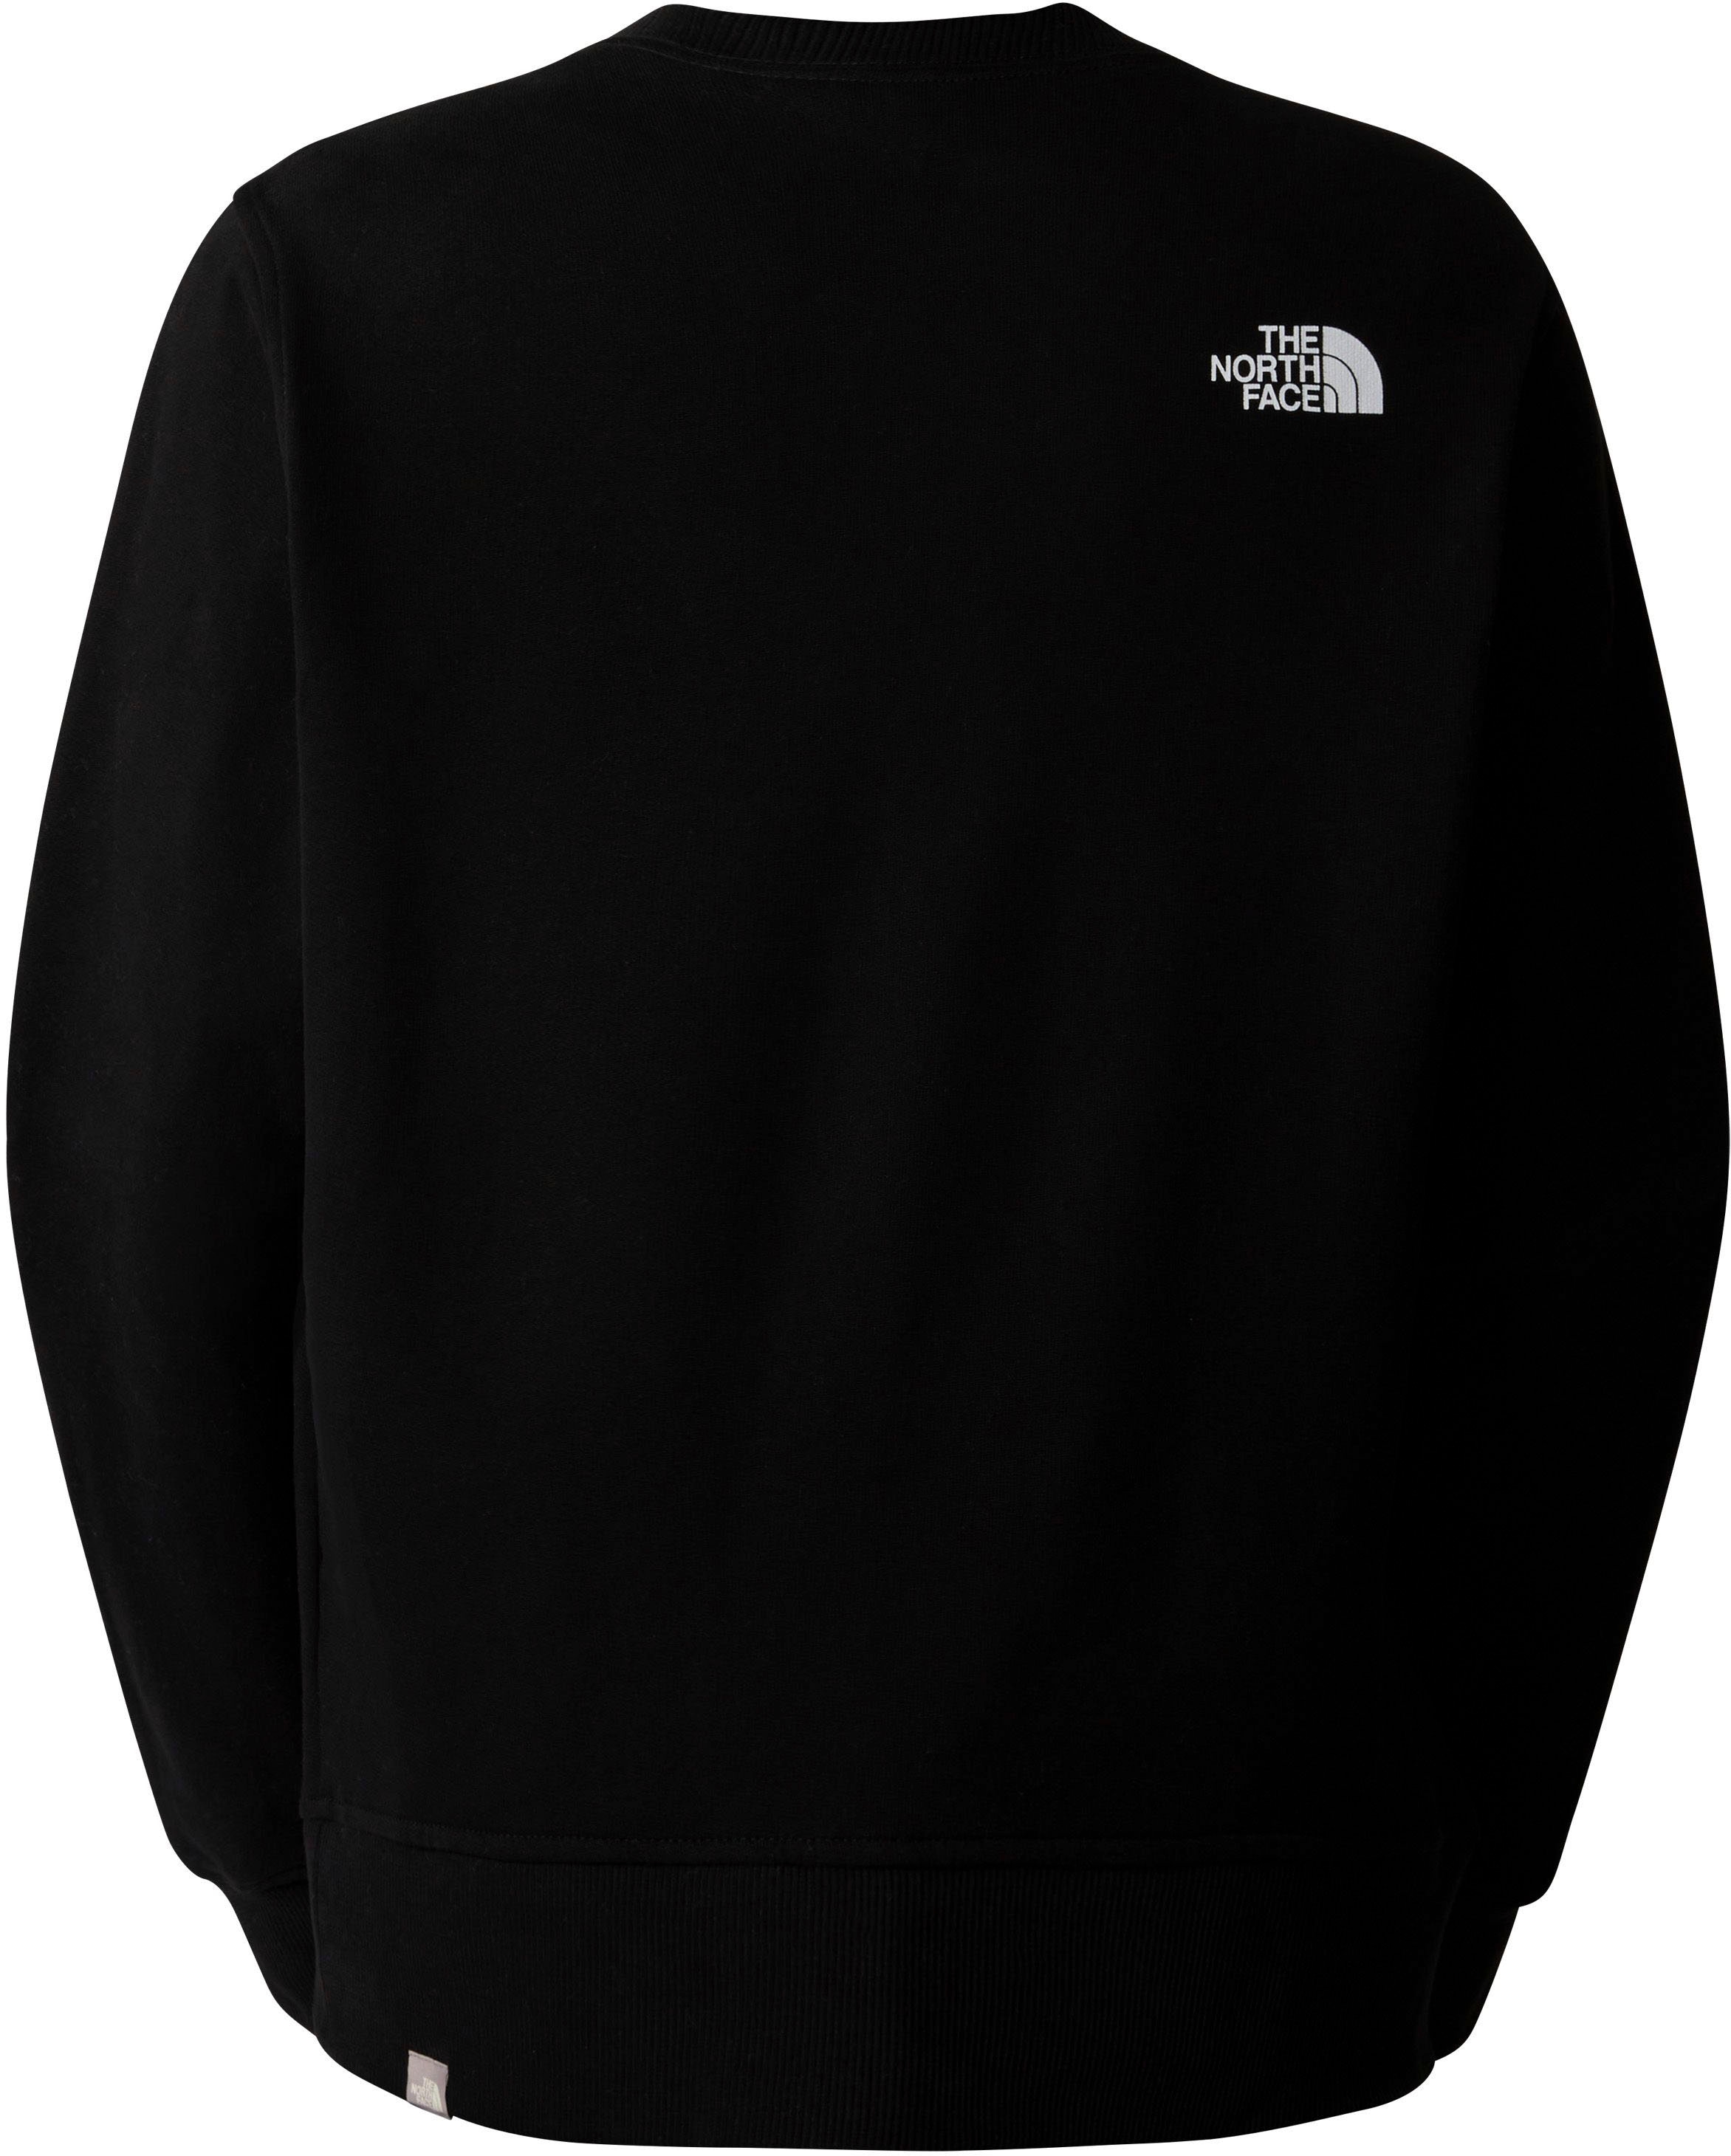 The North Face Sweatshirt »W LIGHT DREW PEAK CREW«, (1 tlg.), in schlichtem Design